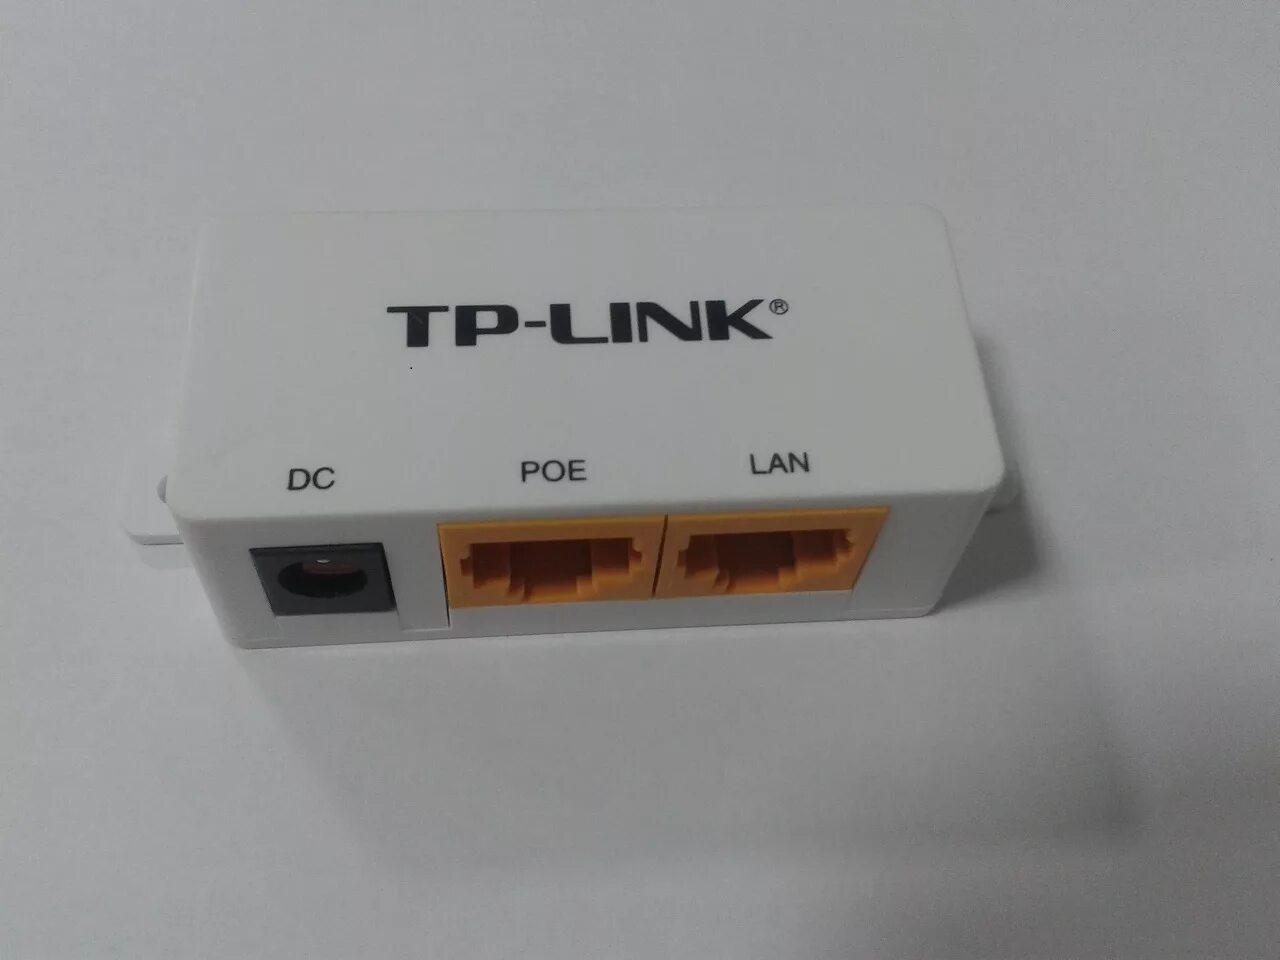 Poe инжектор tp link. TP link POE lan. Адаптер TP-link DC POE lan. TP-link POE lan DC 455. TP link POE 200 комплект адаптеров.